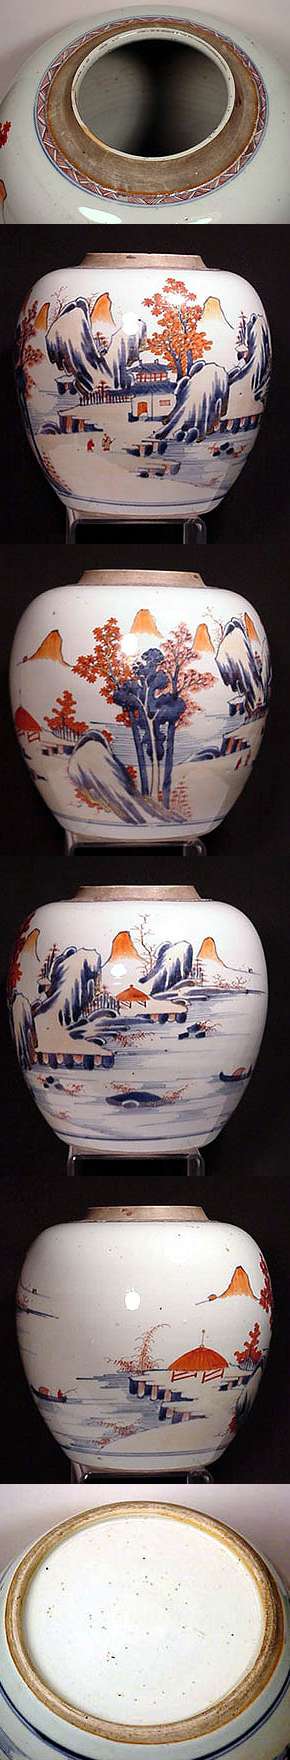 Chinese Imari 18th century Ginger Jar